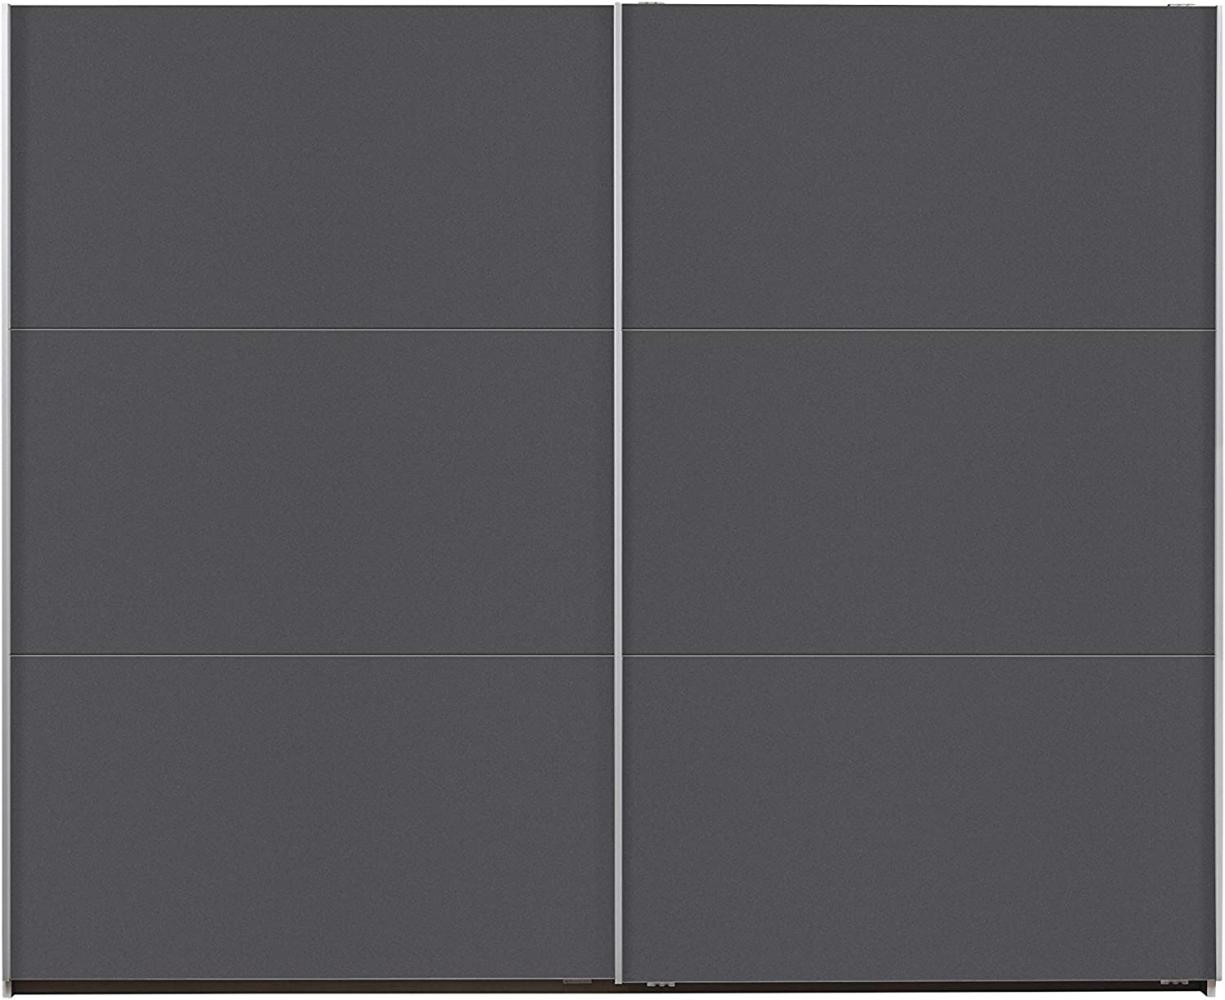 Rauch Möbel Santiago Schwebetürenschrank, Holz, grau-metallic, BxHxT: 261x210x59 cm Bild 1